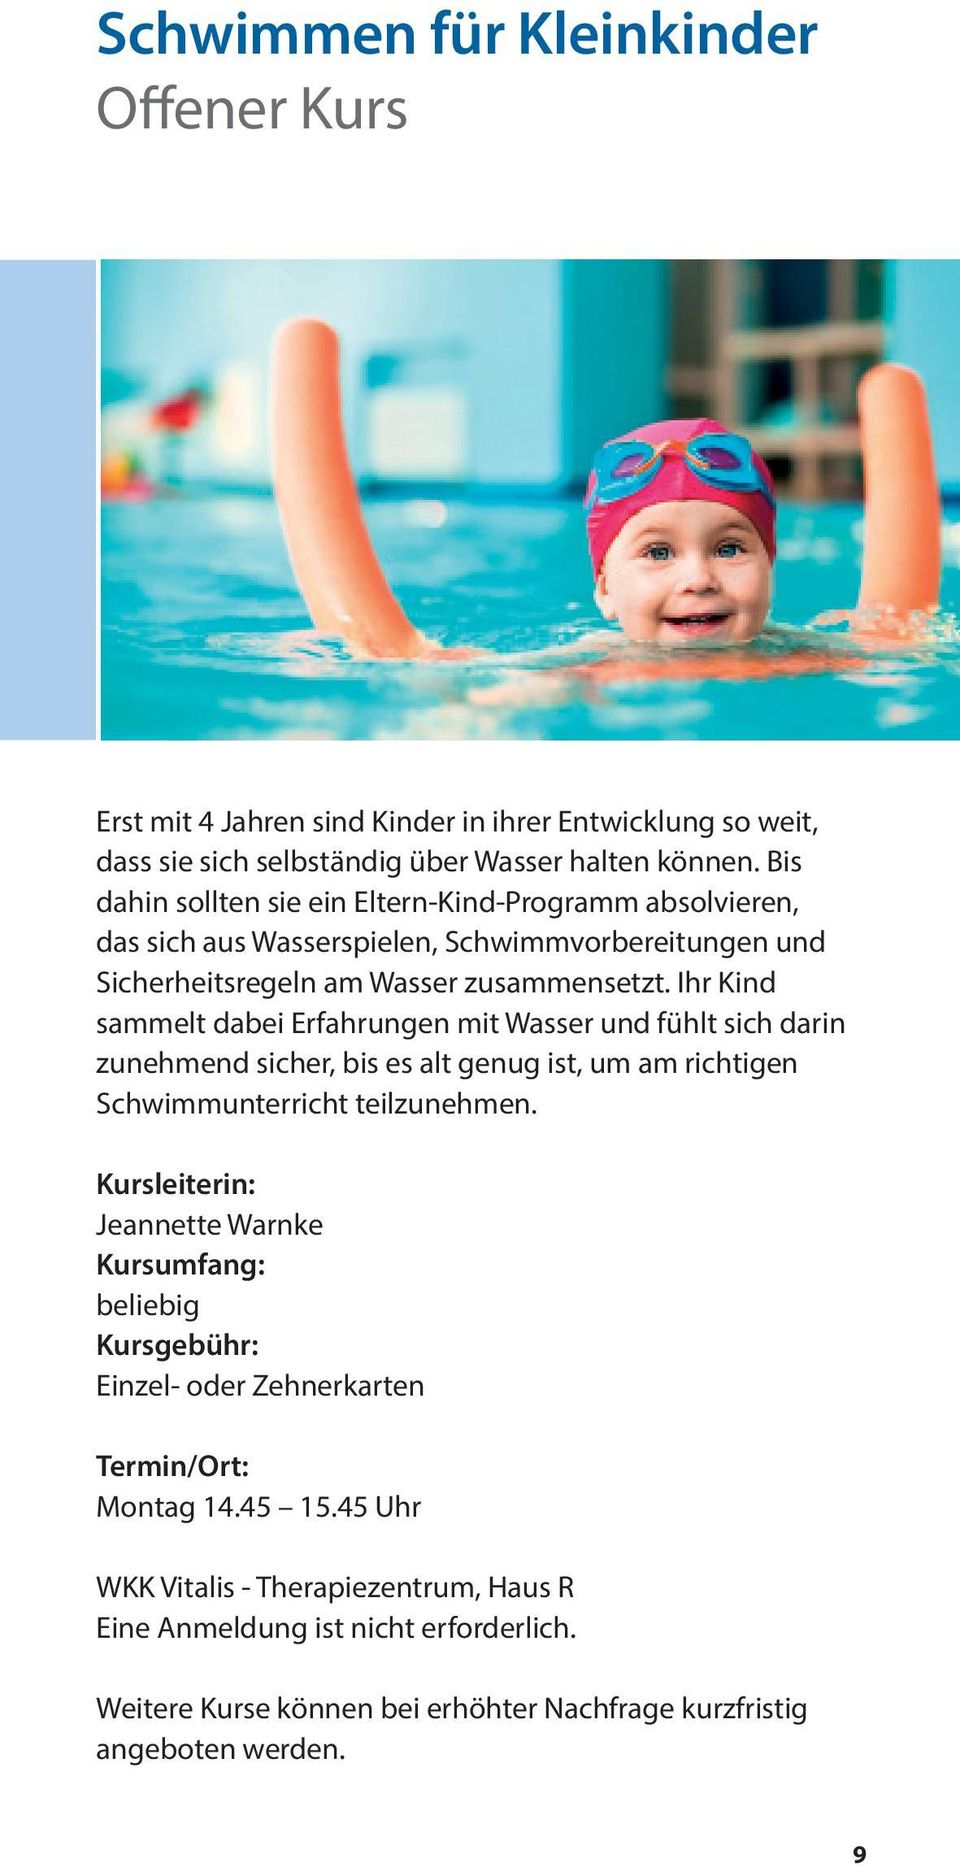 Ihr Kind sammelt dabei Erfahrungen mit Wasser und fühlt sich darin zunehmend sicher, bis es alt genug ist, um am richtigen Schwimmunterricht teilzunehmen.